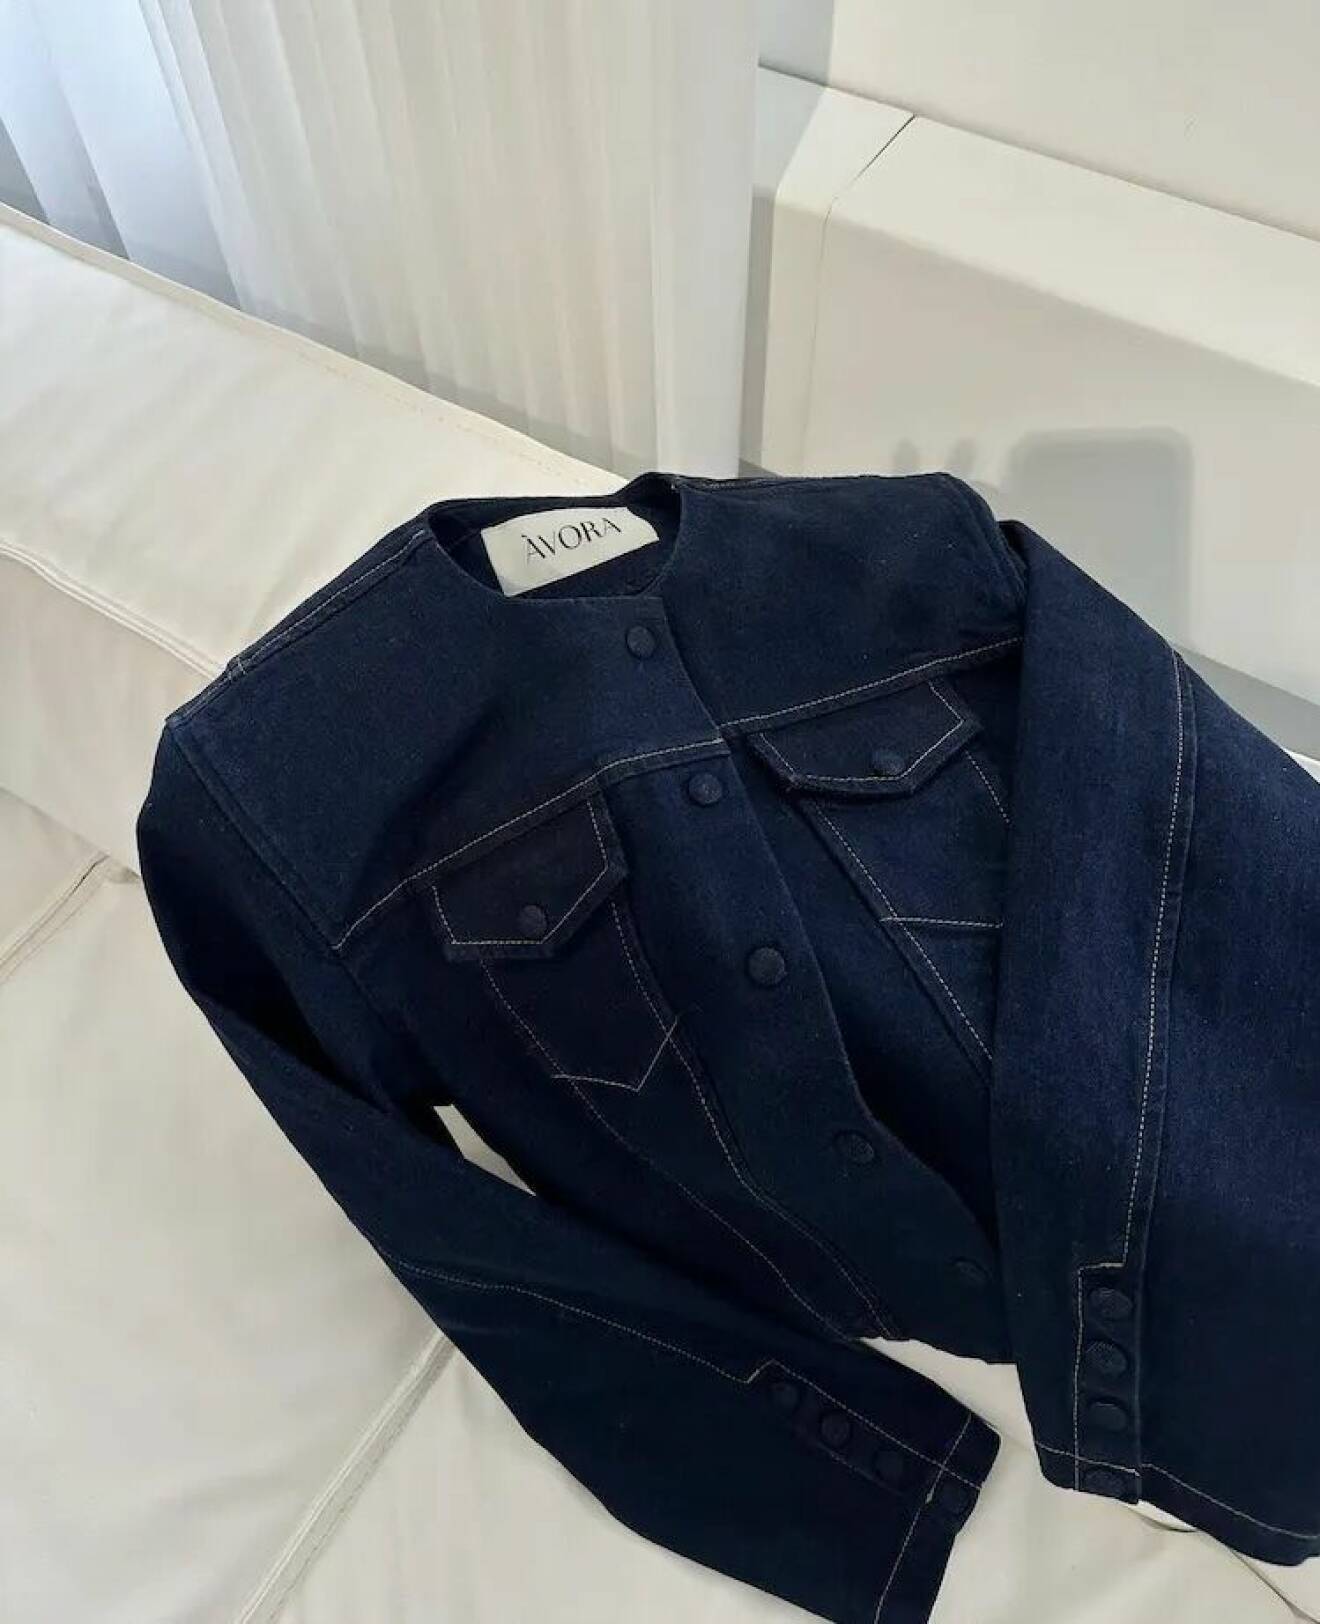 Mörkblå jeansjacka från Avora i croppad modell.